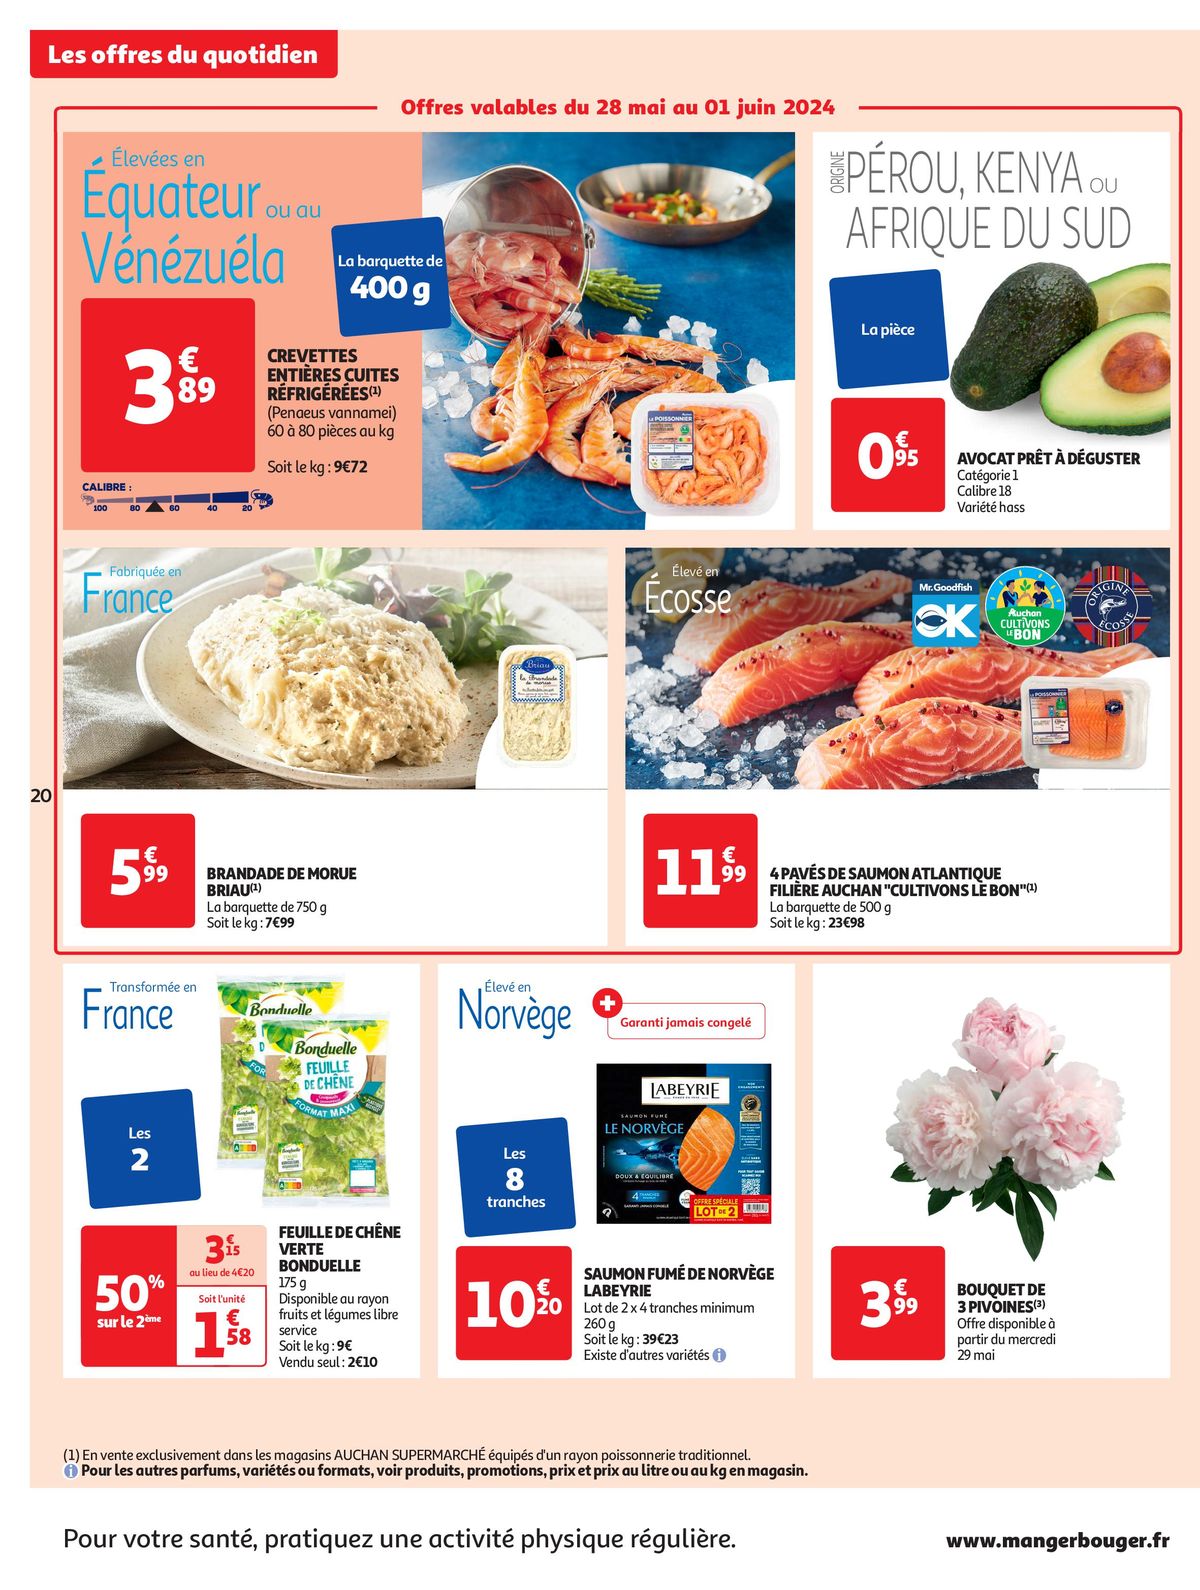 Catalogue Format XXL à prix XXS dans votre supermarché, page 00020